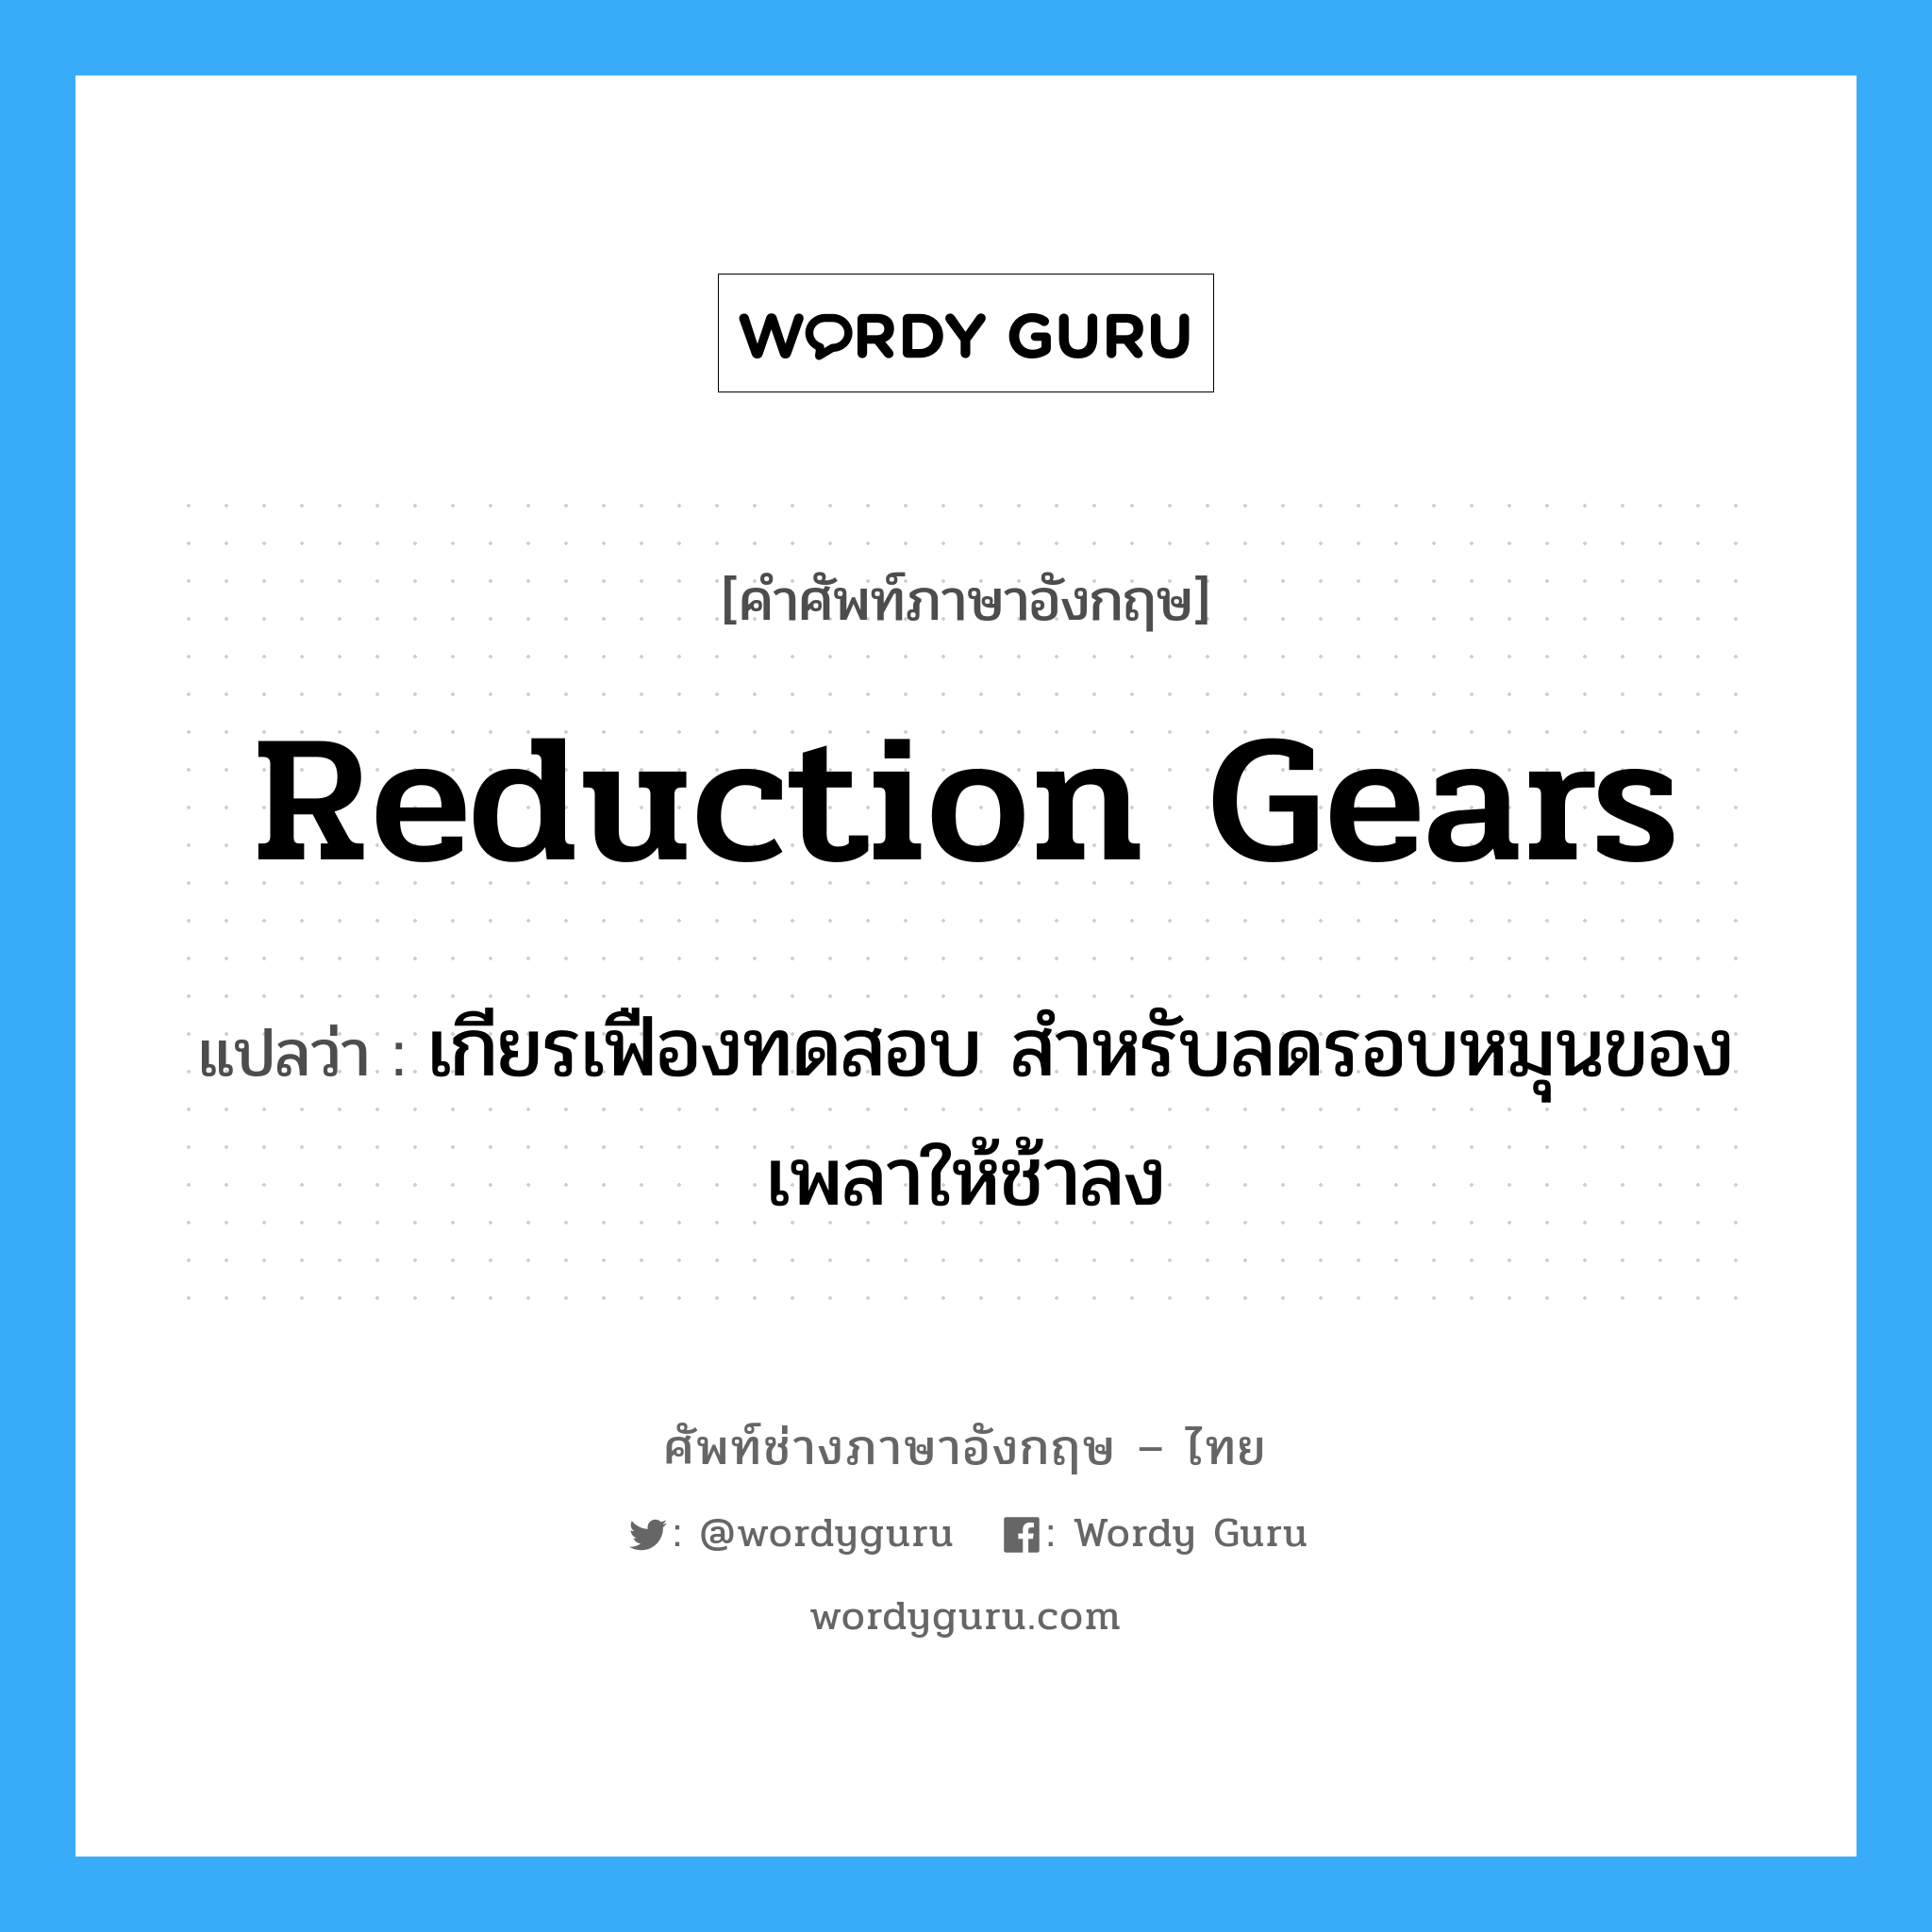 reduction gears แปลว่า?, คำศัพท์ช่างภาษาอังกฤษ - ไทย reduction gears คำศัพท์ภาษาอังกฤษ reduction gears แปลว่า เกียรเฟืองทดสอบ สำหรับลดรอบหมุนของเพลาให้ช้าลง